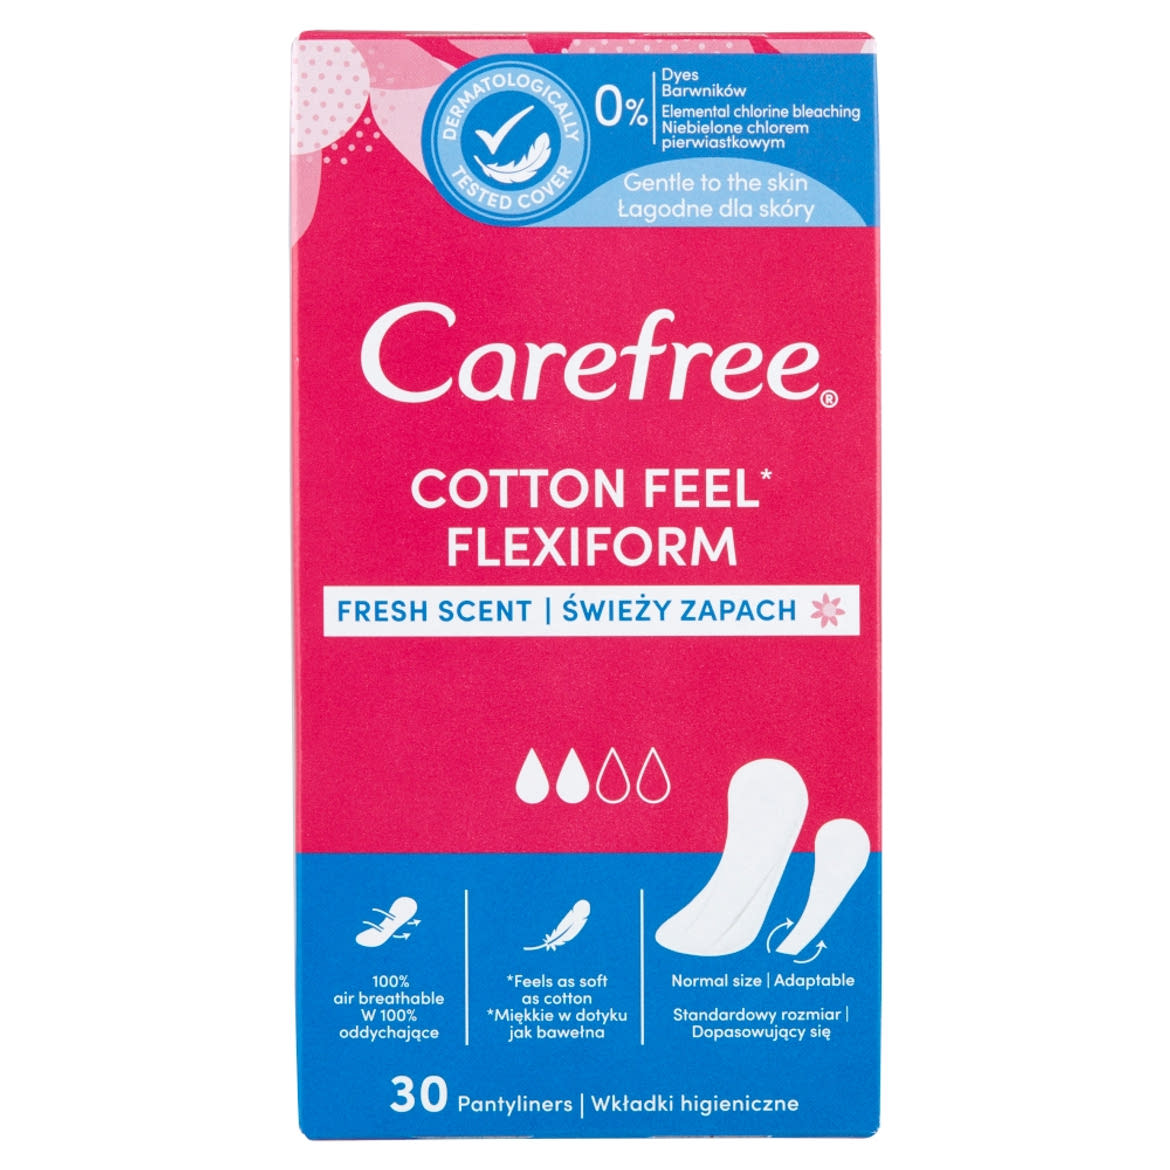 Carefree Cotton Feel Flexiform tisztasági betét friss illattal